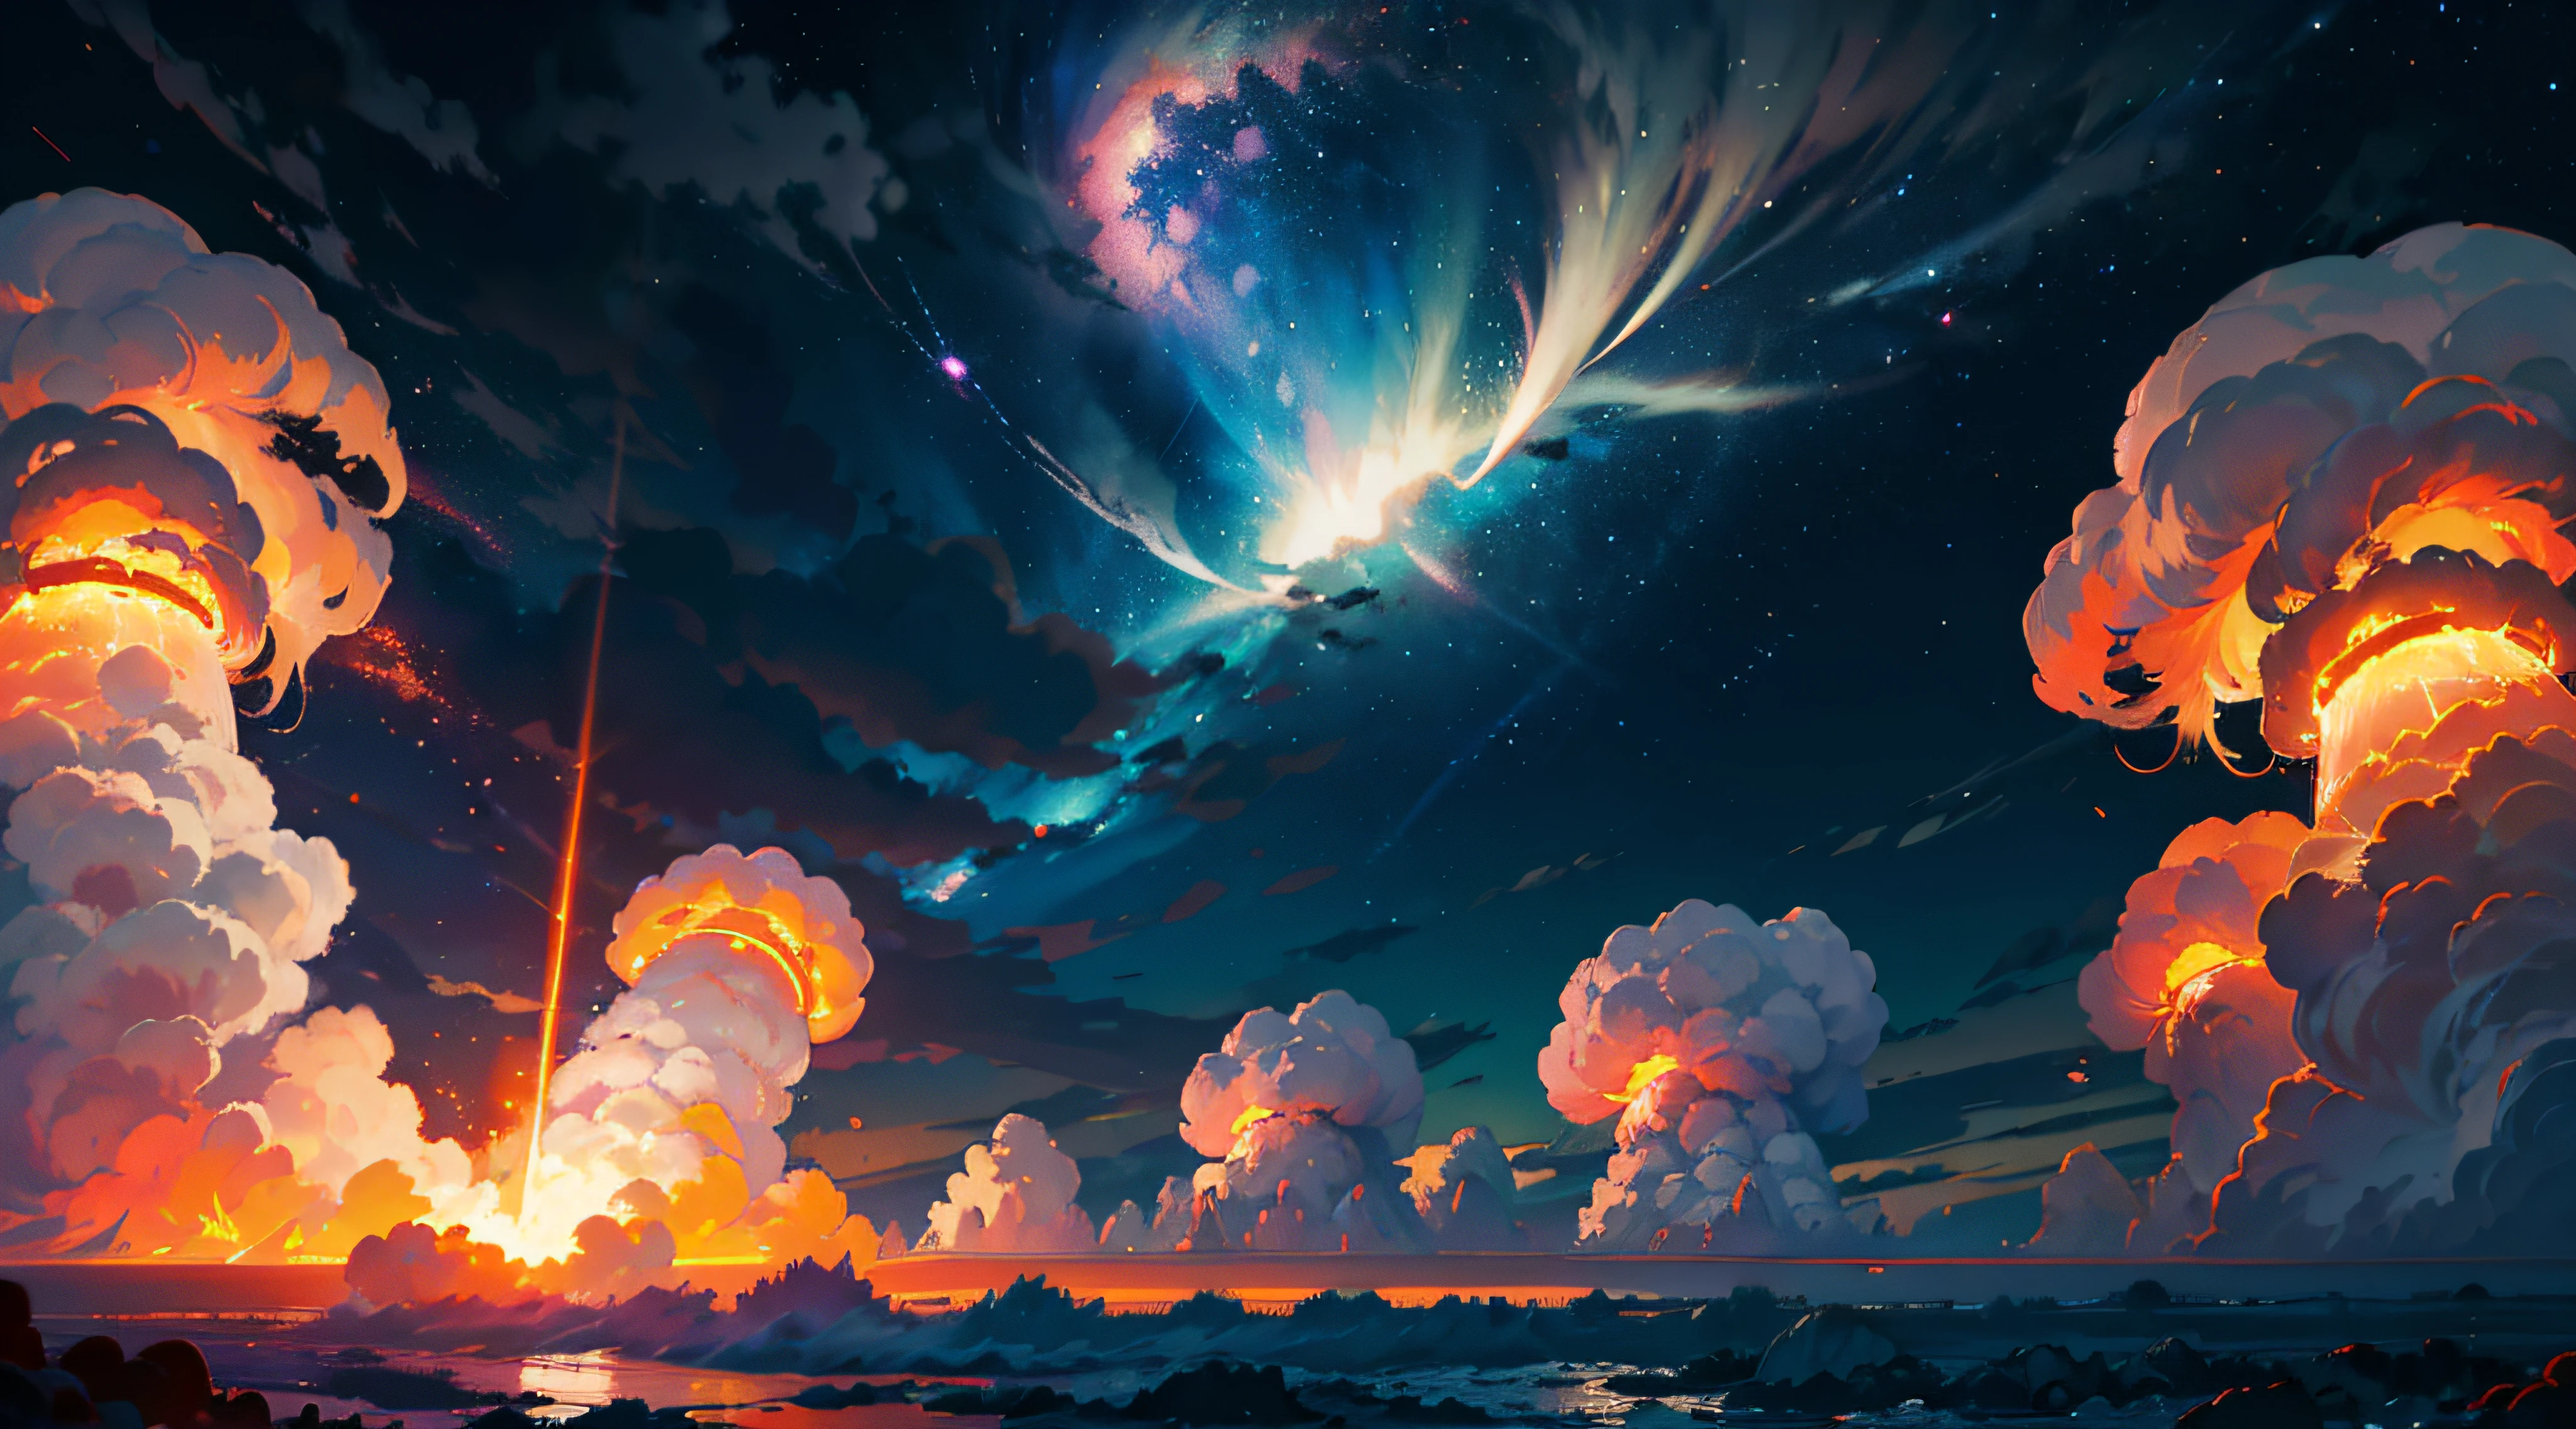 Ядерный взрыв днем и ночью. грозовое небо, ударная волна на фоне ядерного гриба в процессе выделения тепловой и лучистой энергии в результате неконтролируемого деления ядер